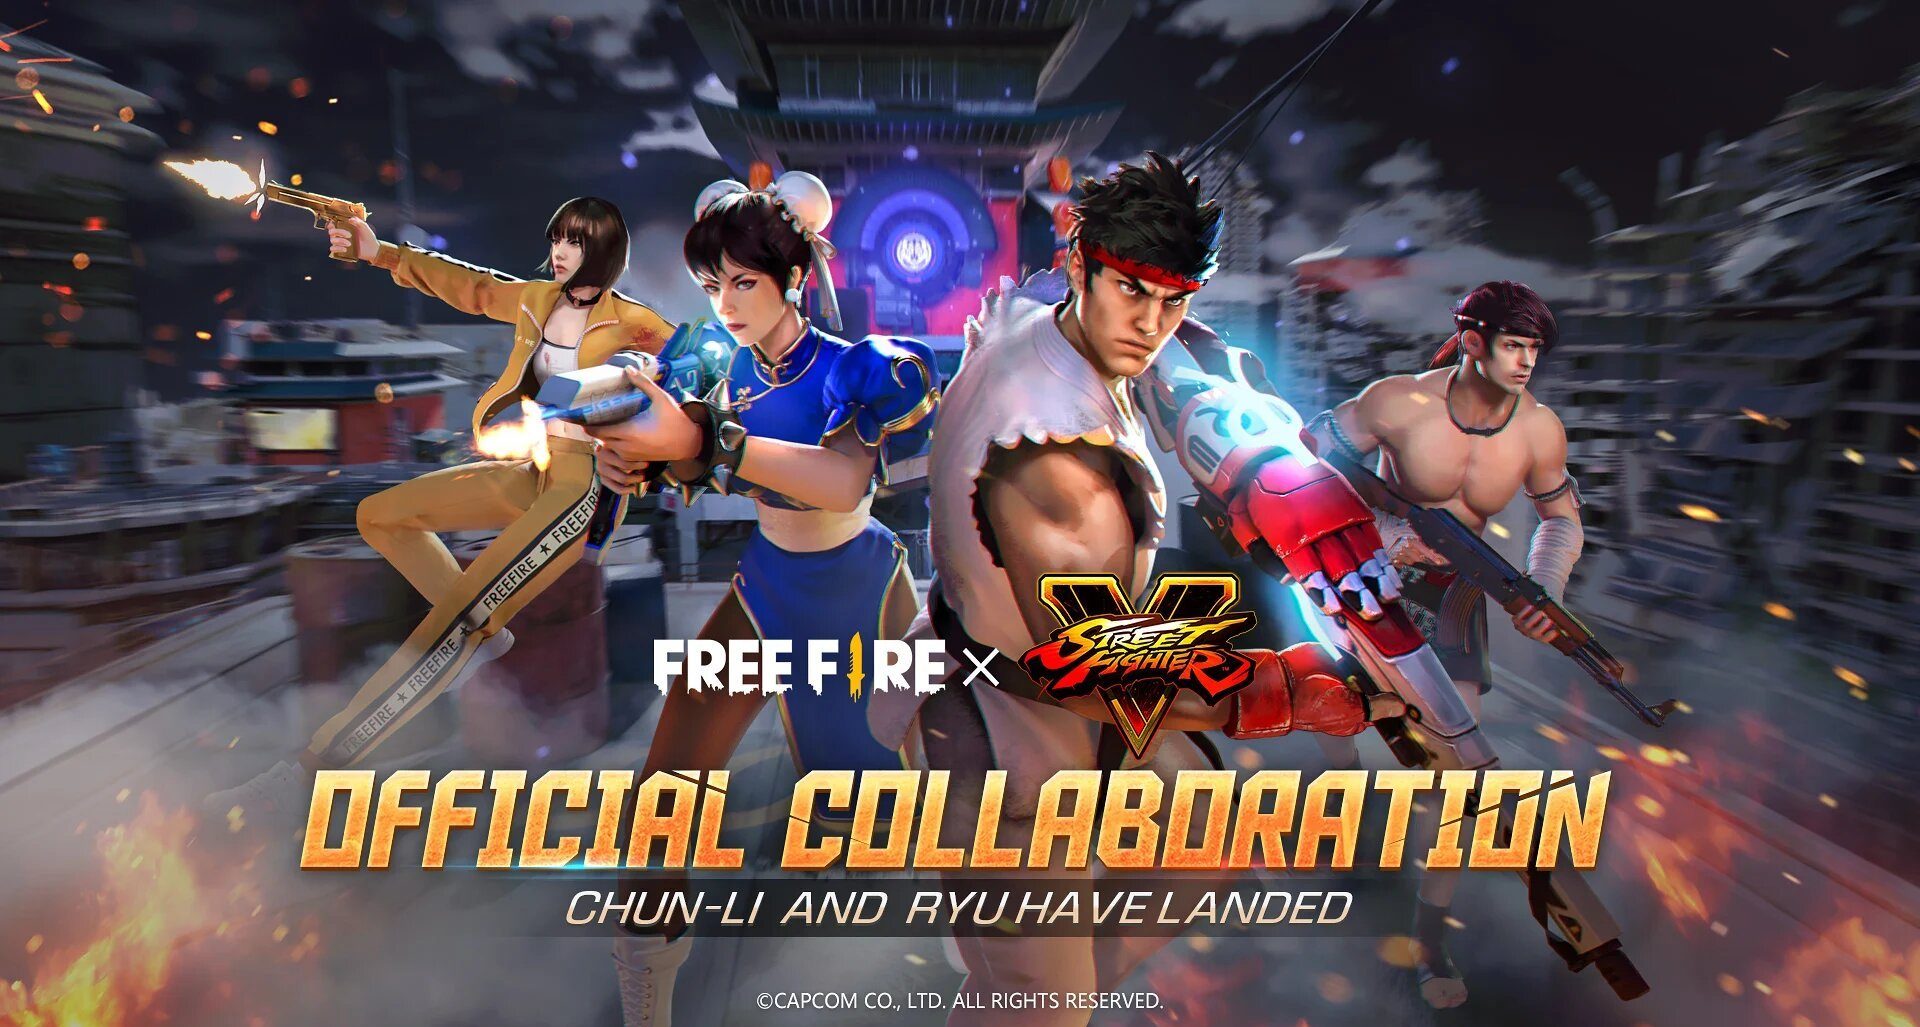 La colaboración de Free Fire y Street Fighter V ha comenzado oficialmente, GamersRD